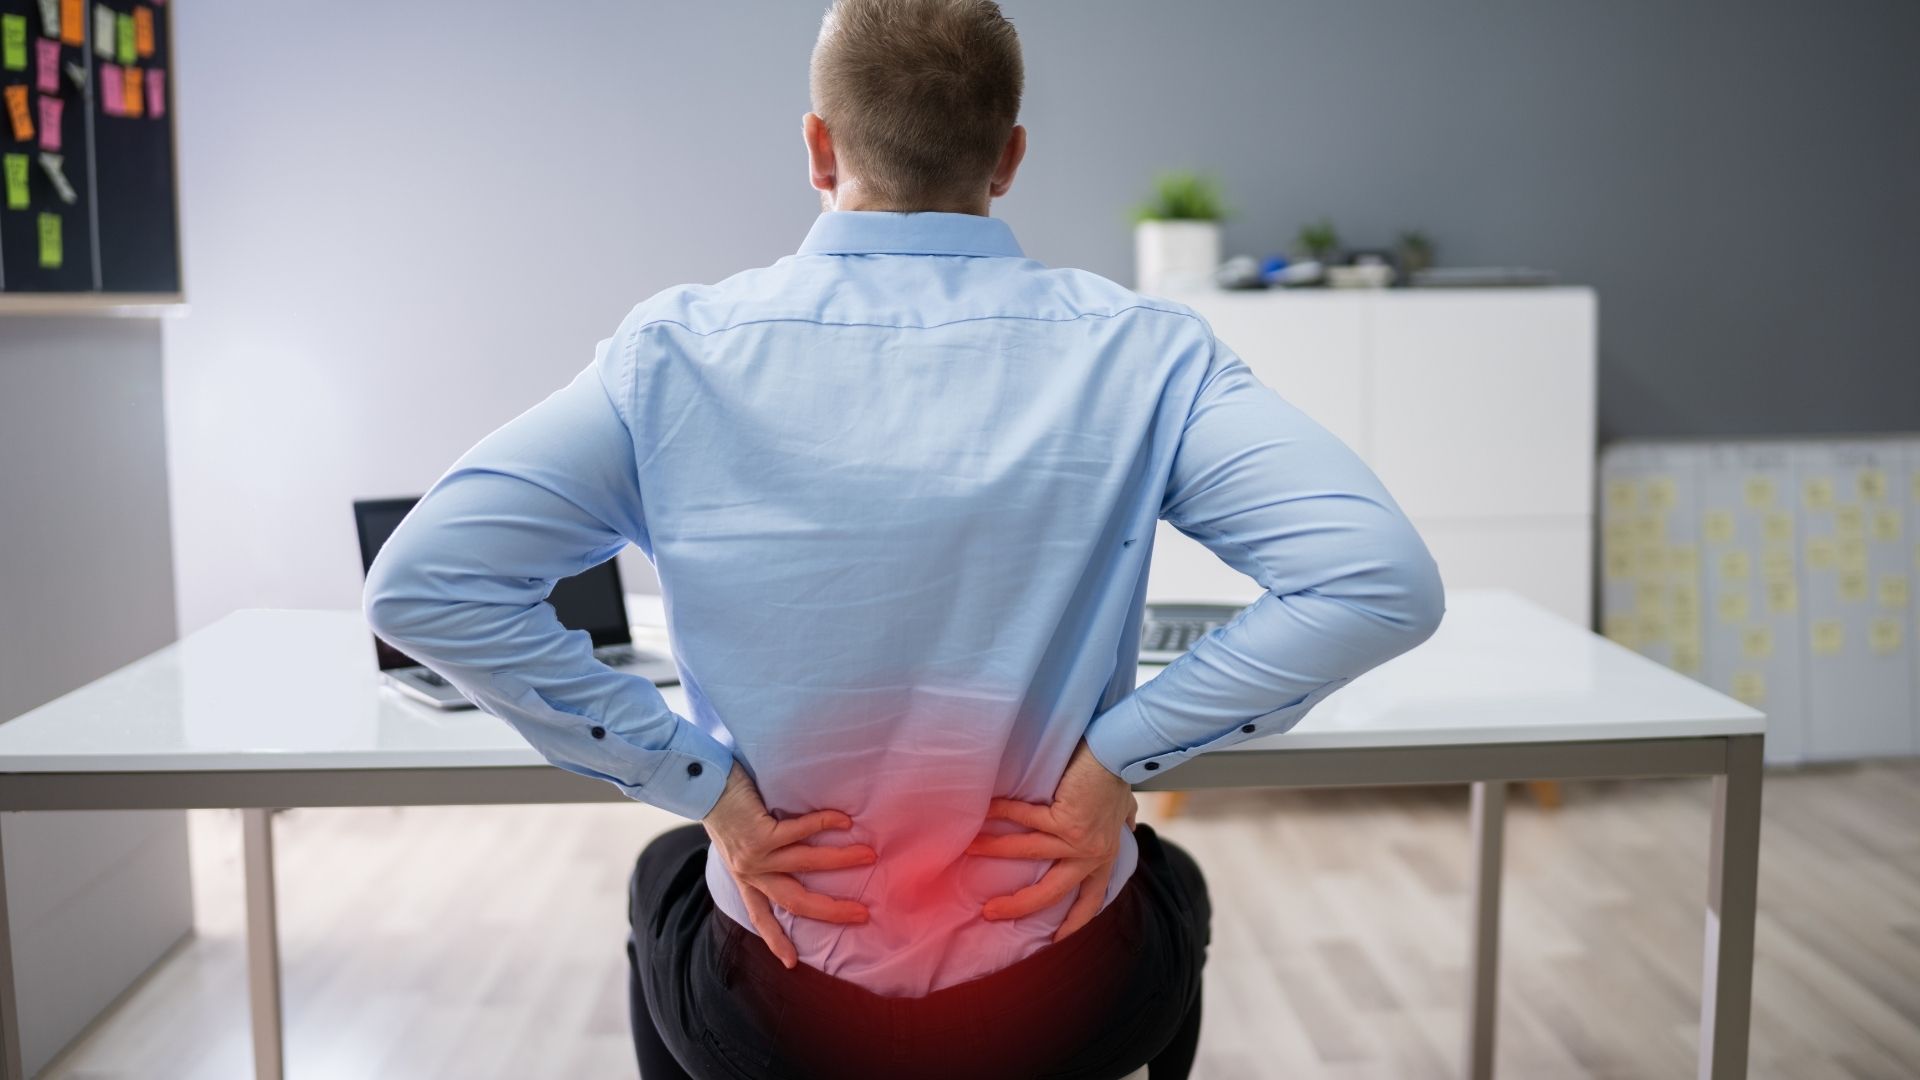 Bolno rame može biti simptom ozbiljnih bolesti. Liječite na vrijeme! - tellyougov.com